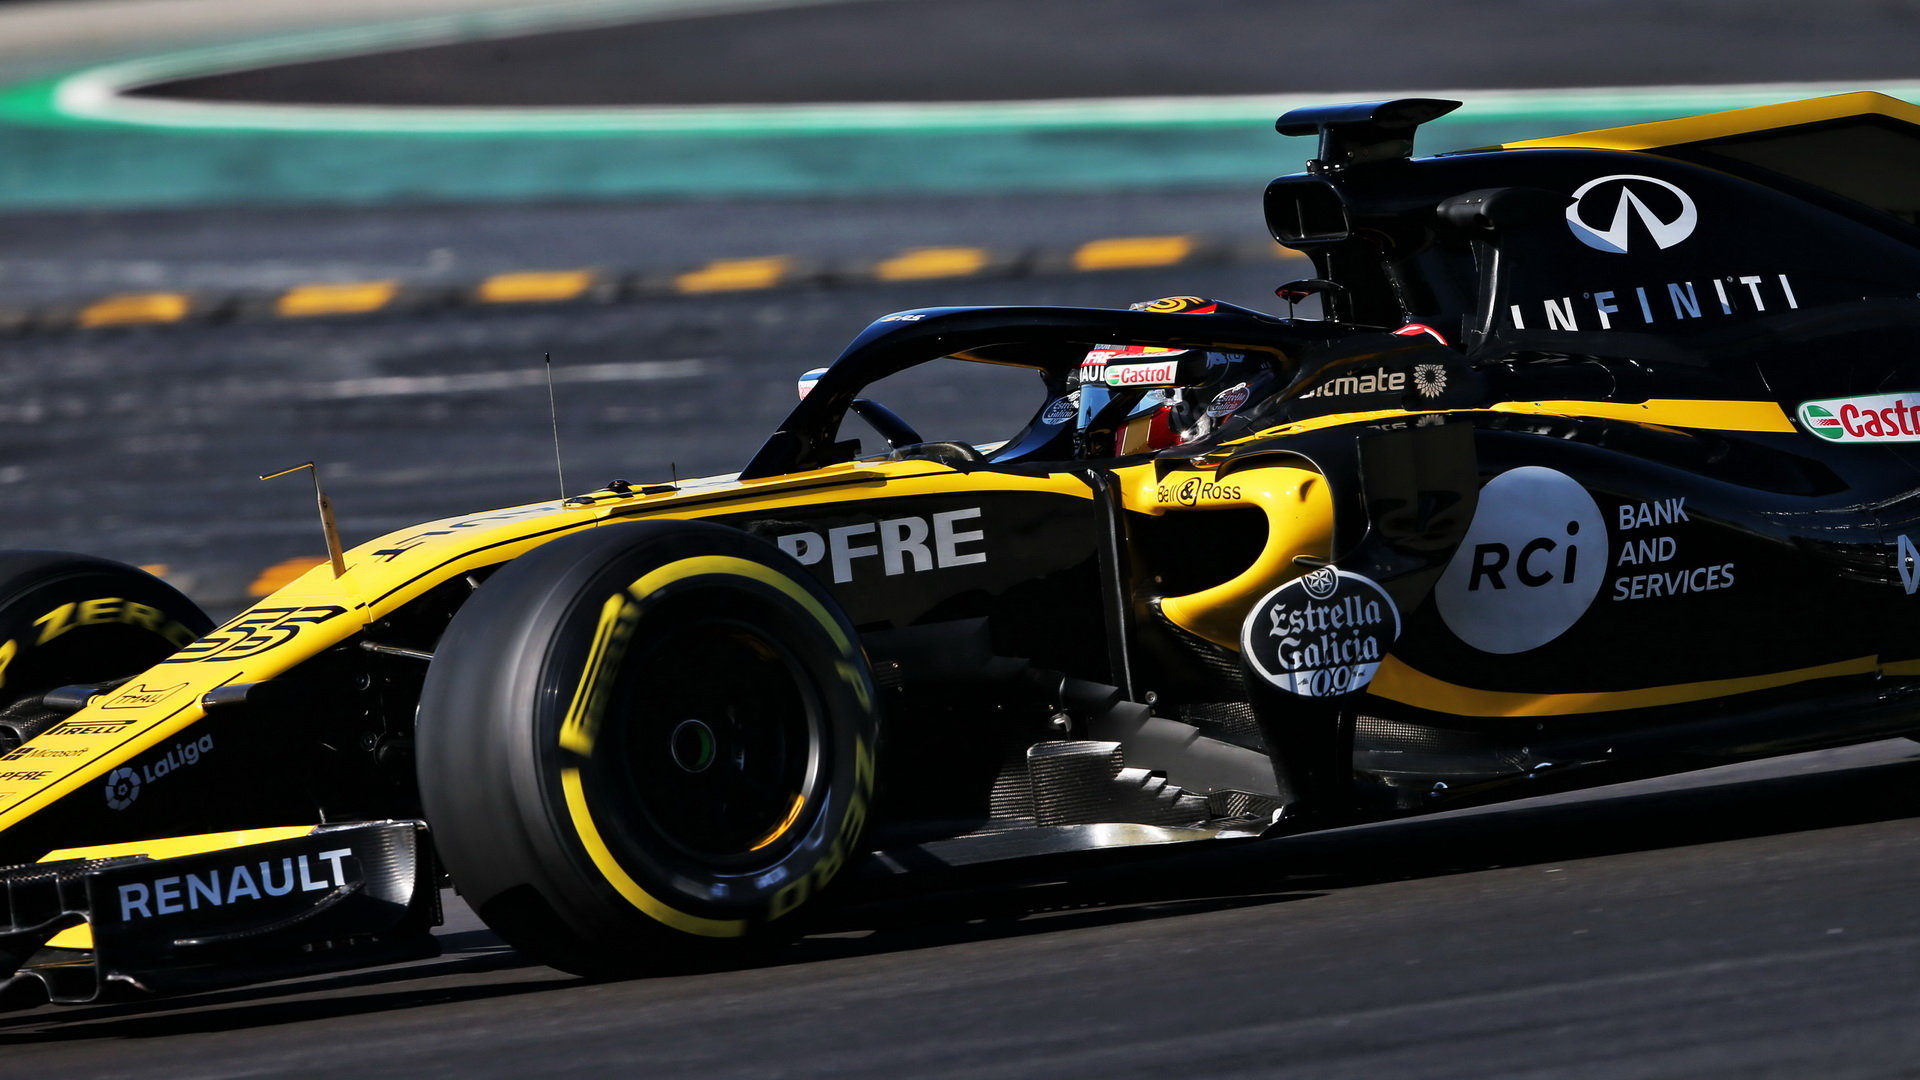 Carlos Sainz v druhých předsezonních testech v Barceloně